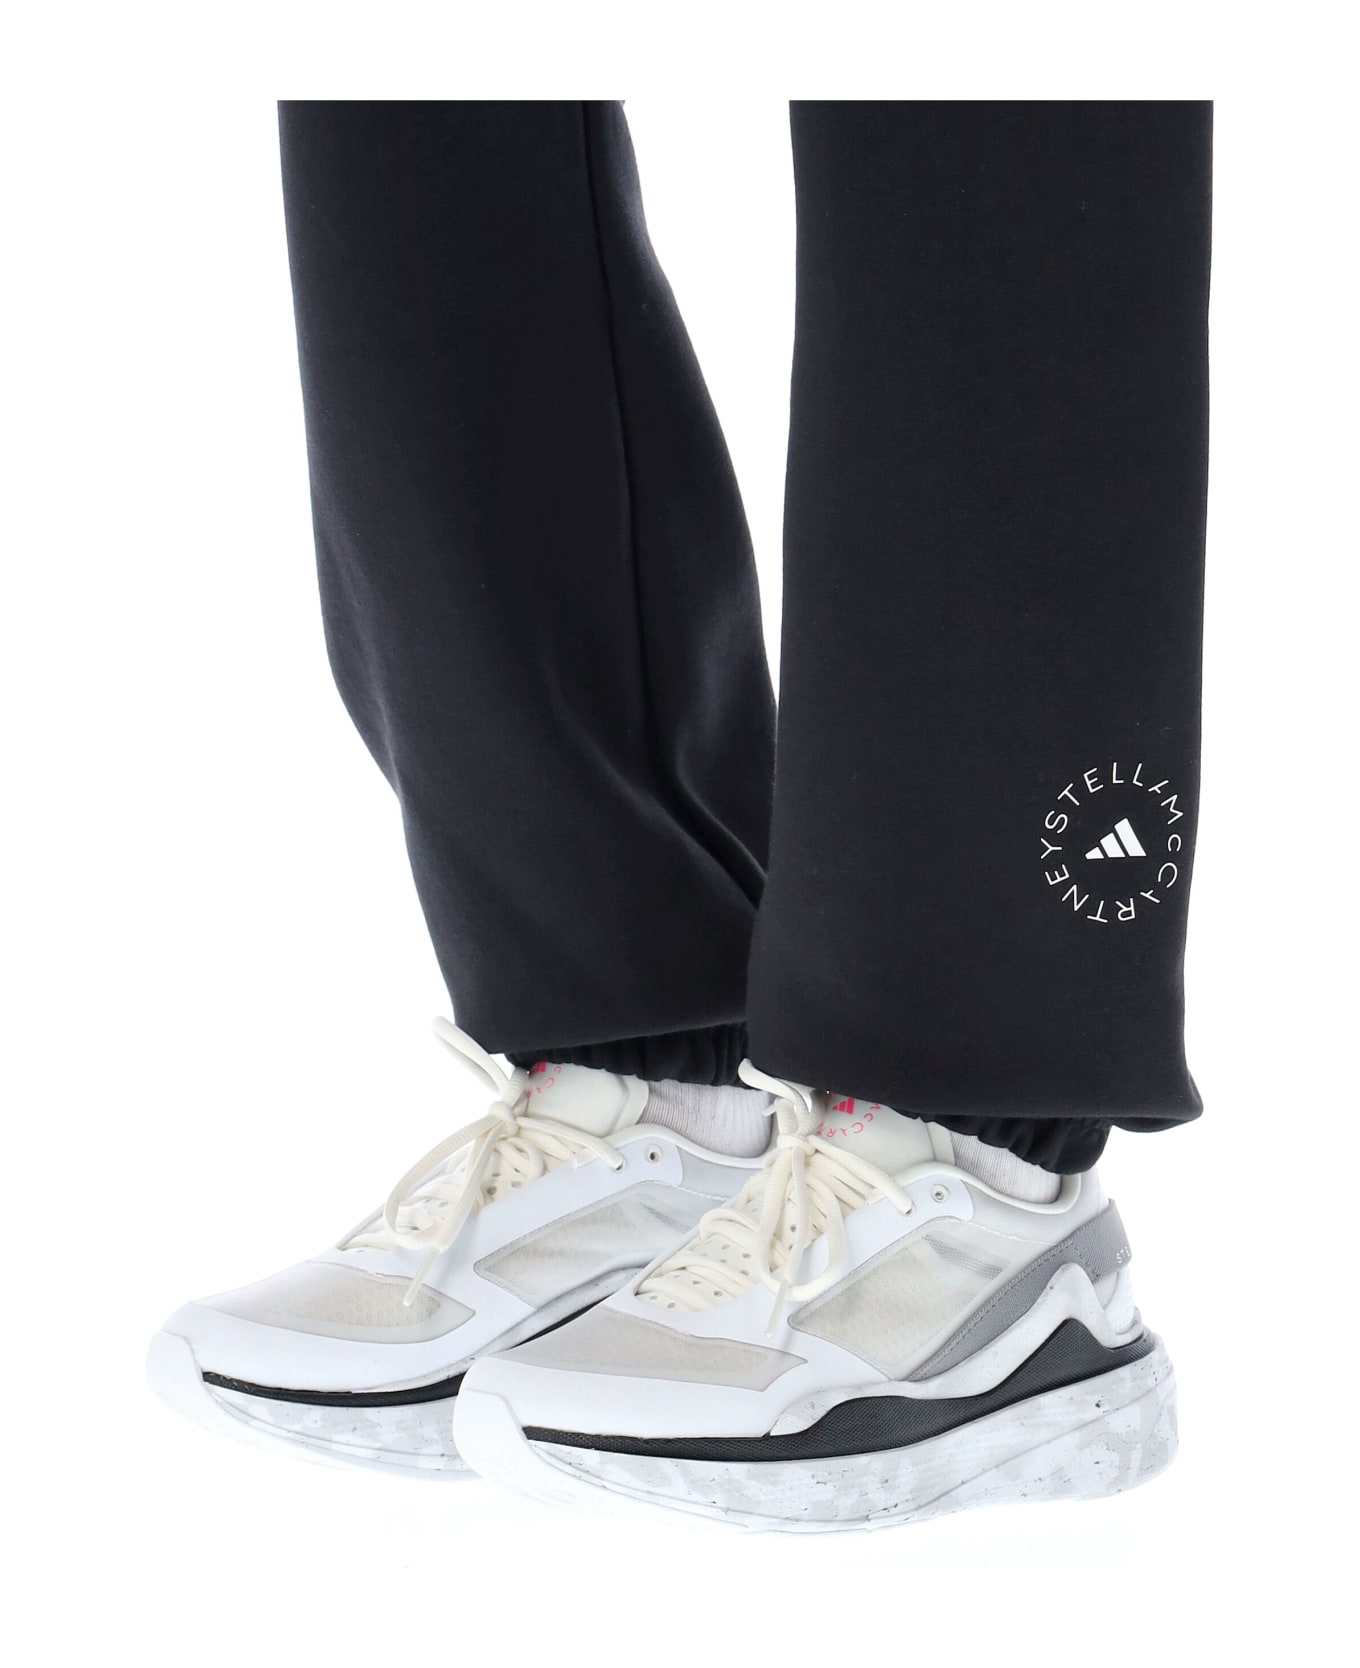 Adidas by Stella McCartney Sweat Tracksuit Bottoms - Nero